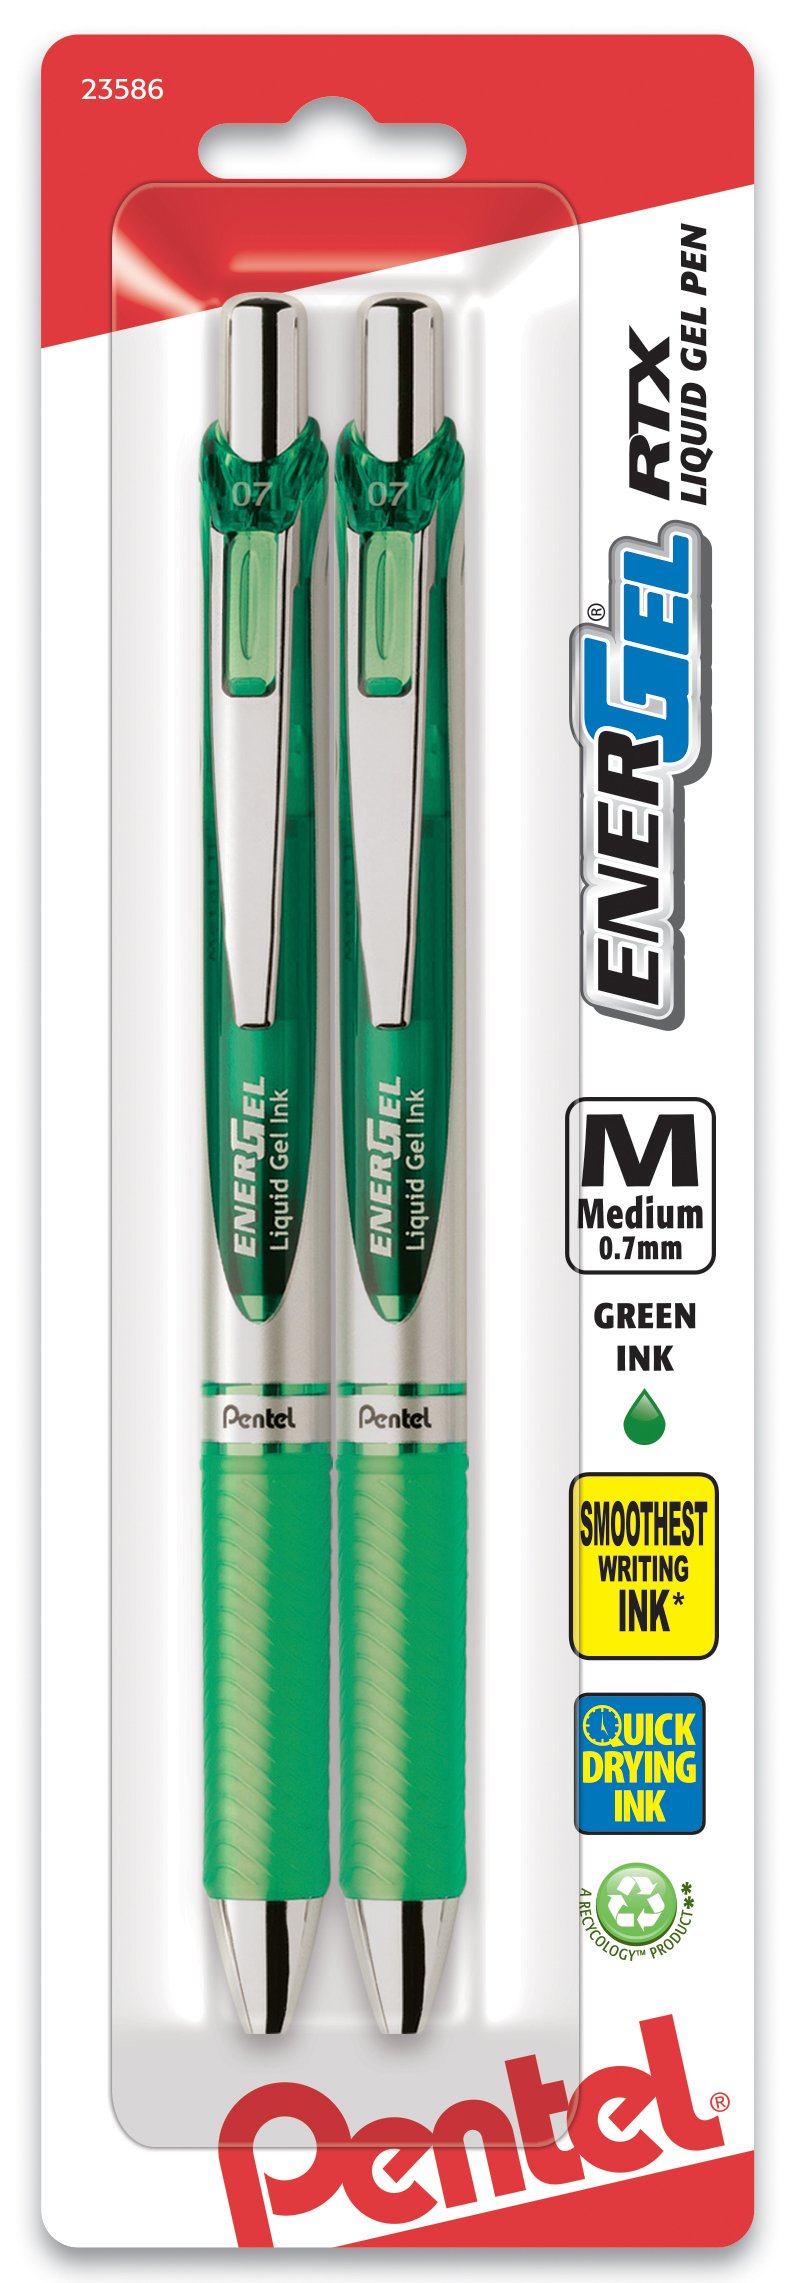 Pentel EnerGel Deluxe RTX Retractable Liquid Gel Pen, 0.7mm, Metal Tip, Green Ink, 2 Pack (BL77BP2D)